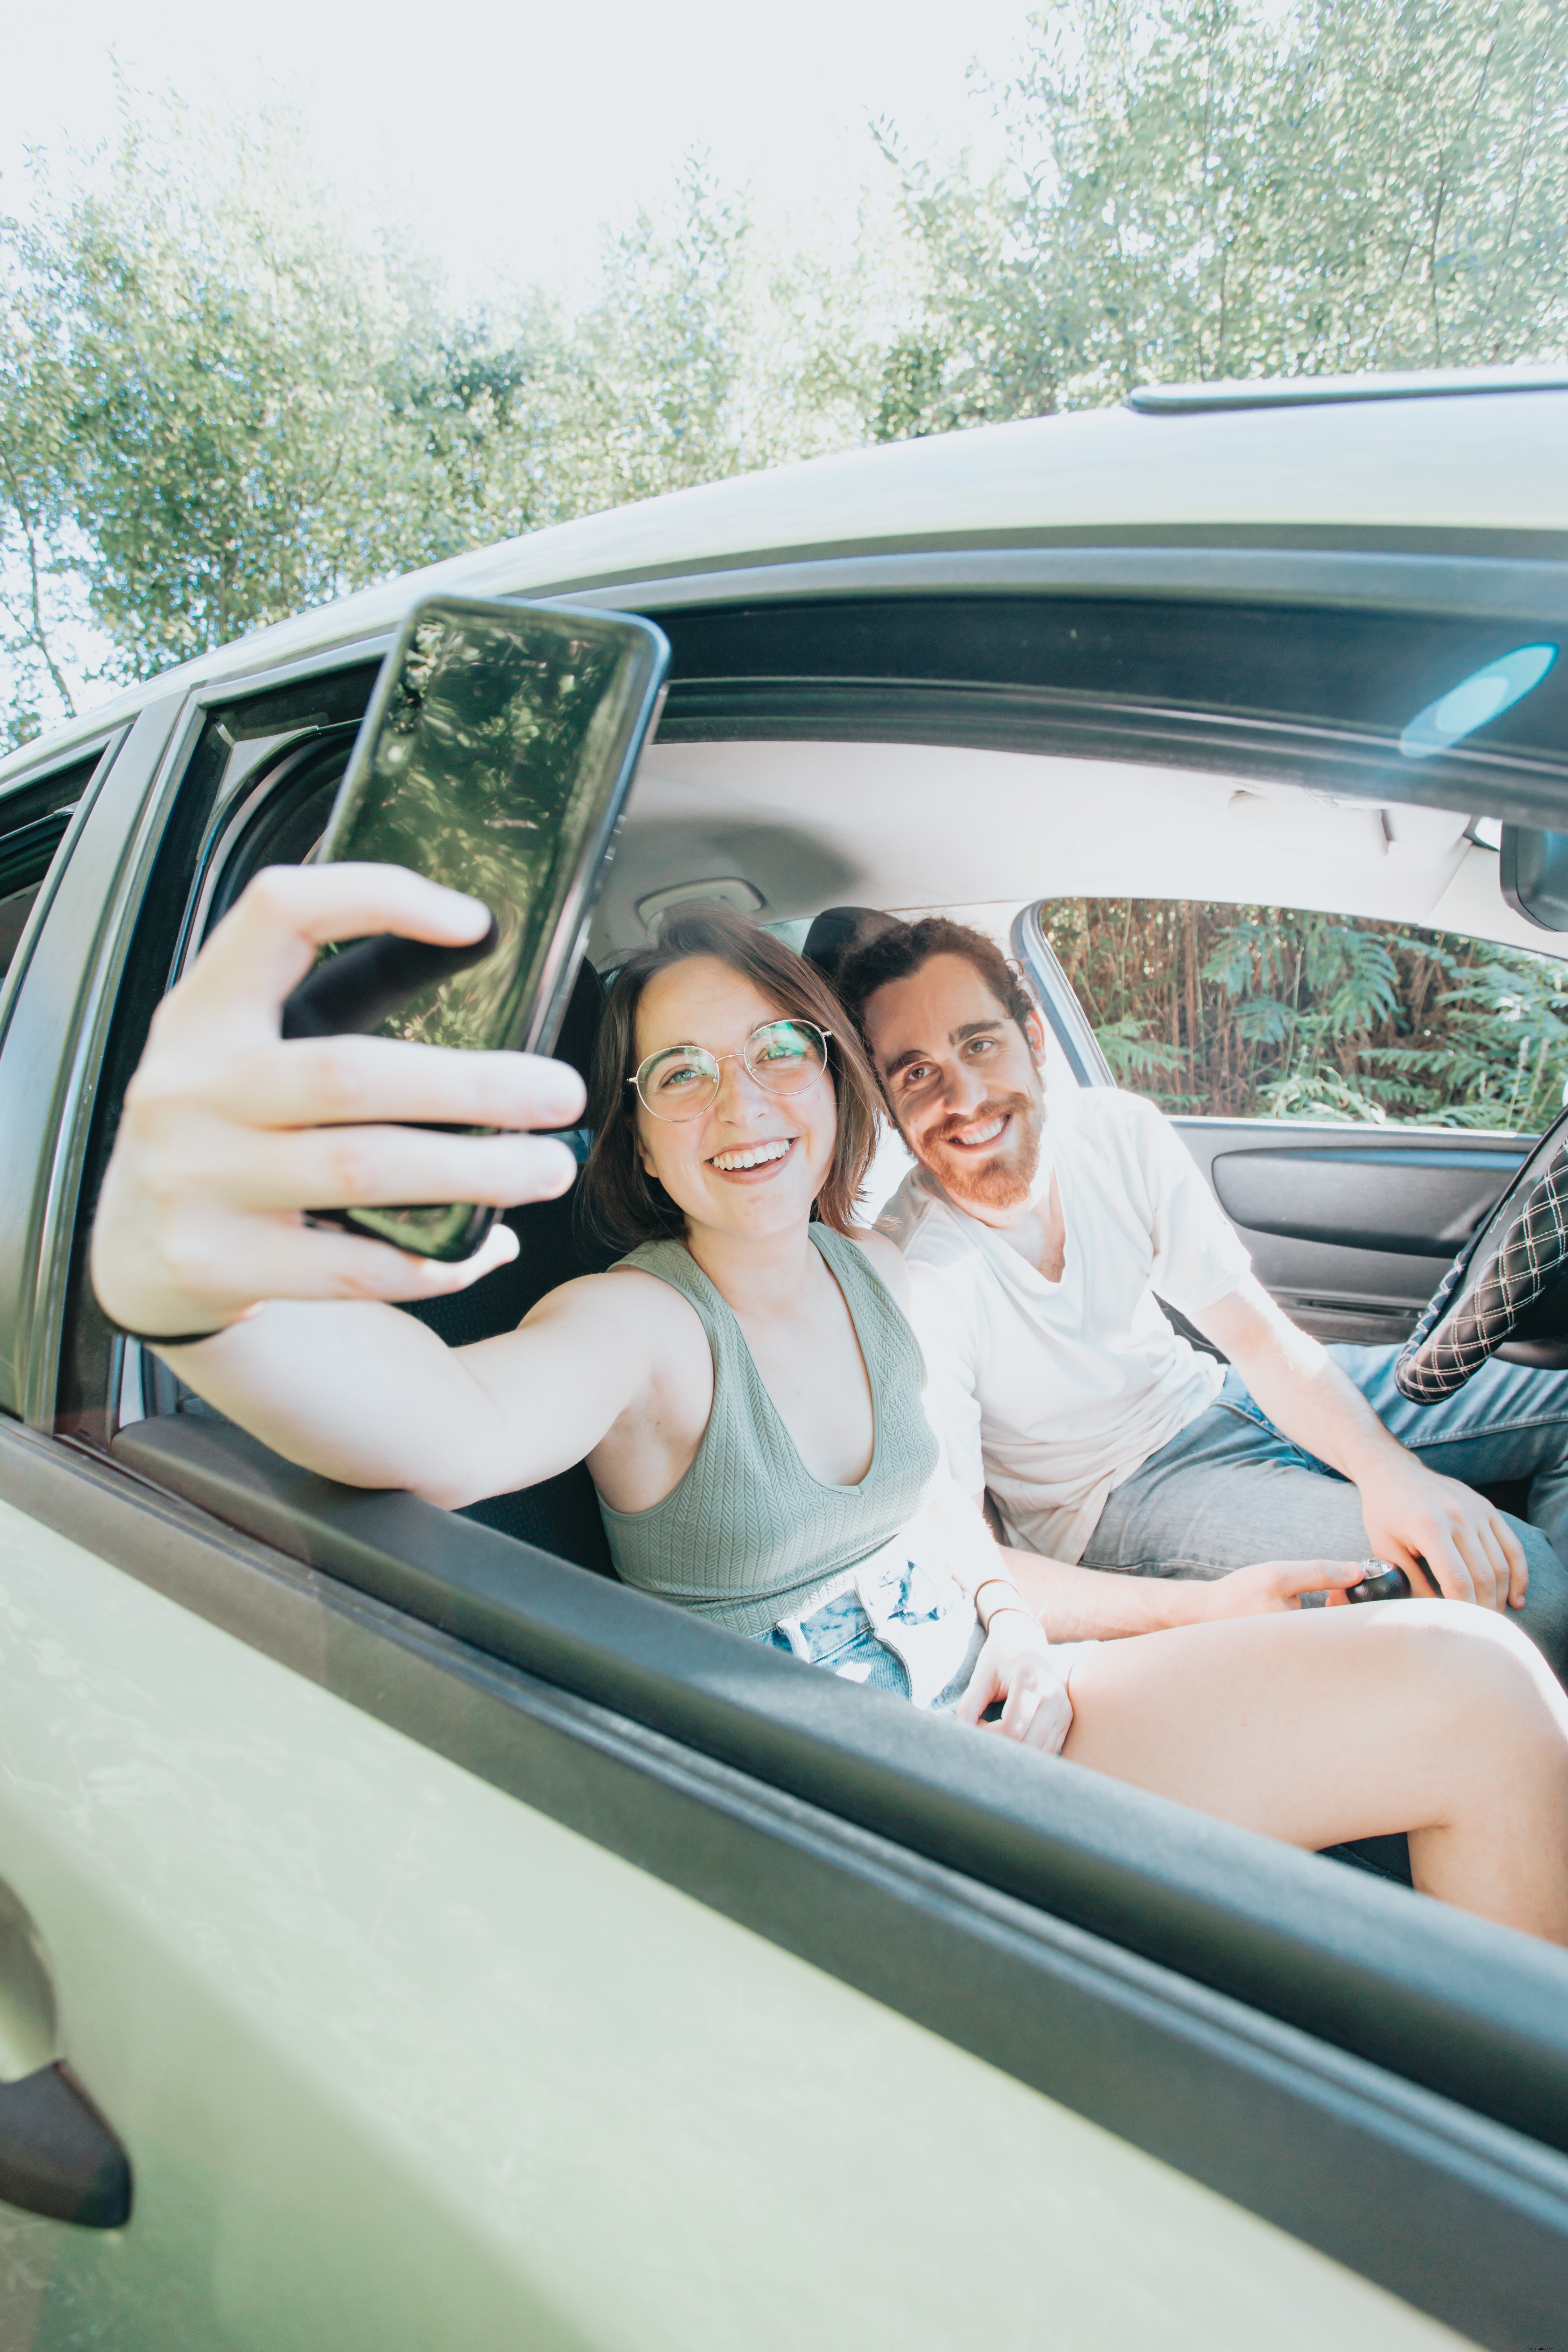 Duas pessoas sentadas em um carro tirando uma selfie juntas foto 